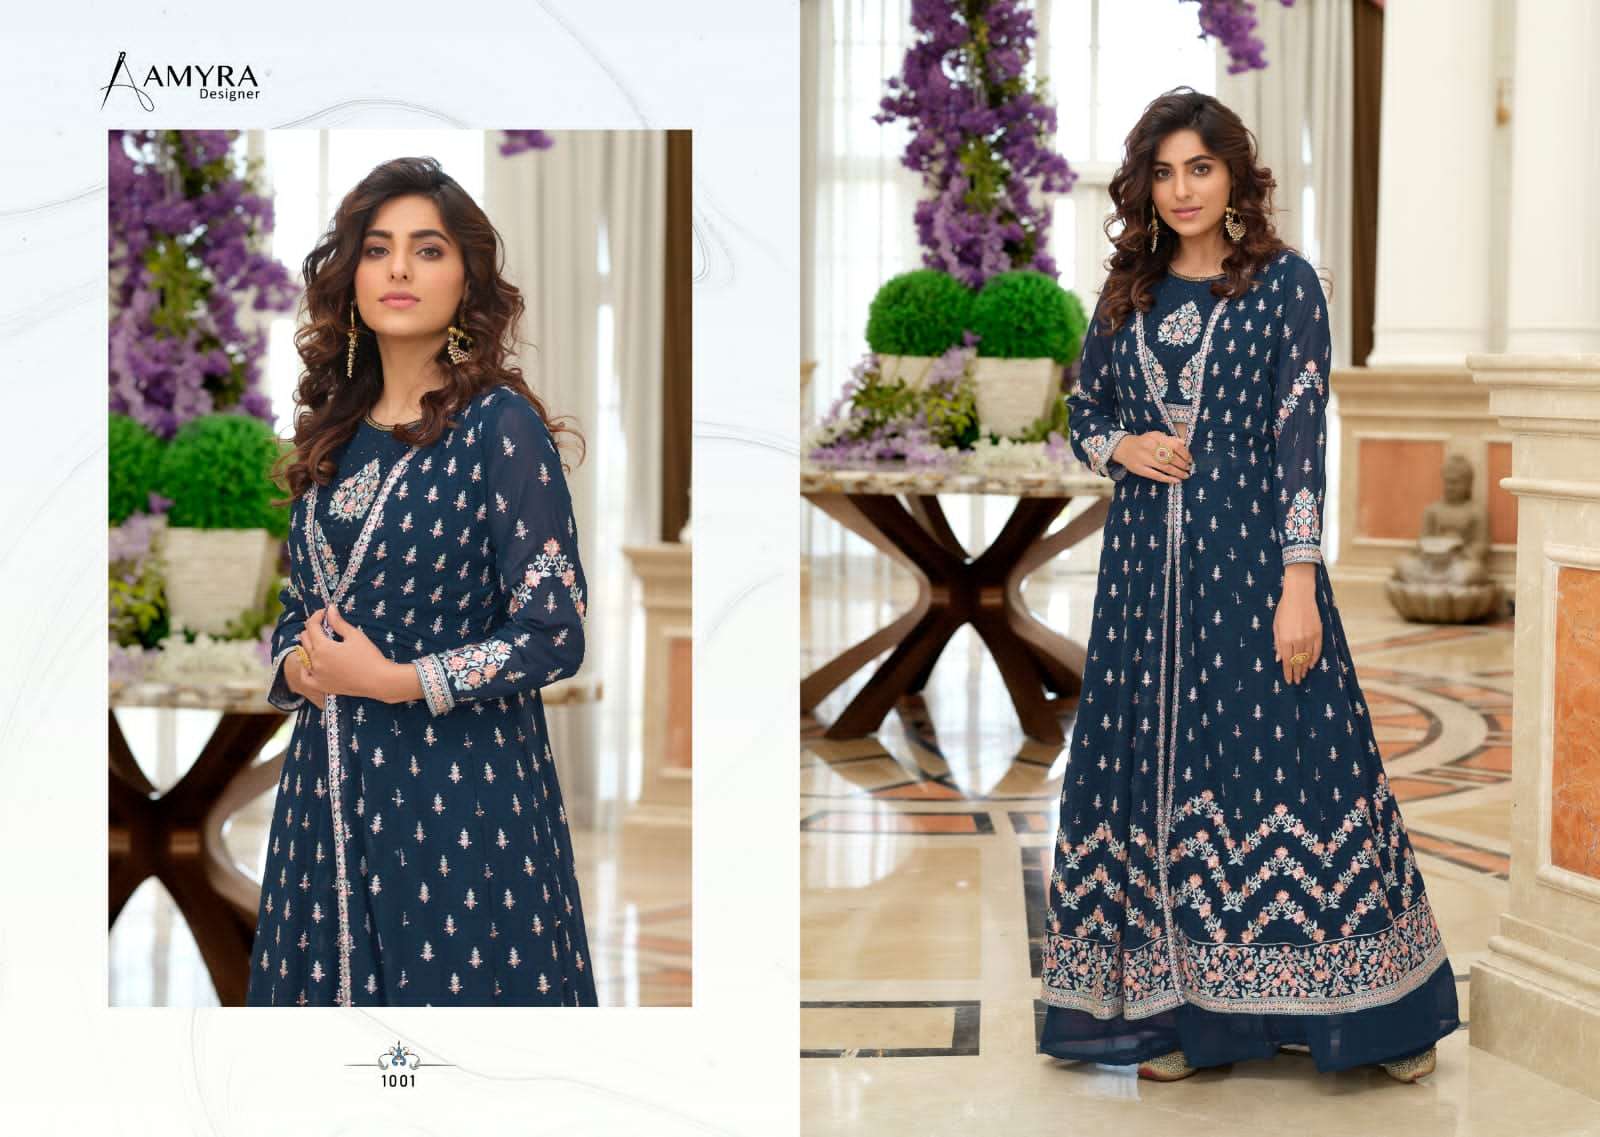 aamyra designer crimson 1001-1004 party wear salwar suits online supplier surat